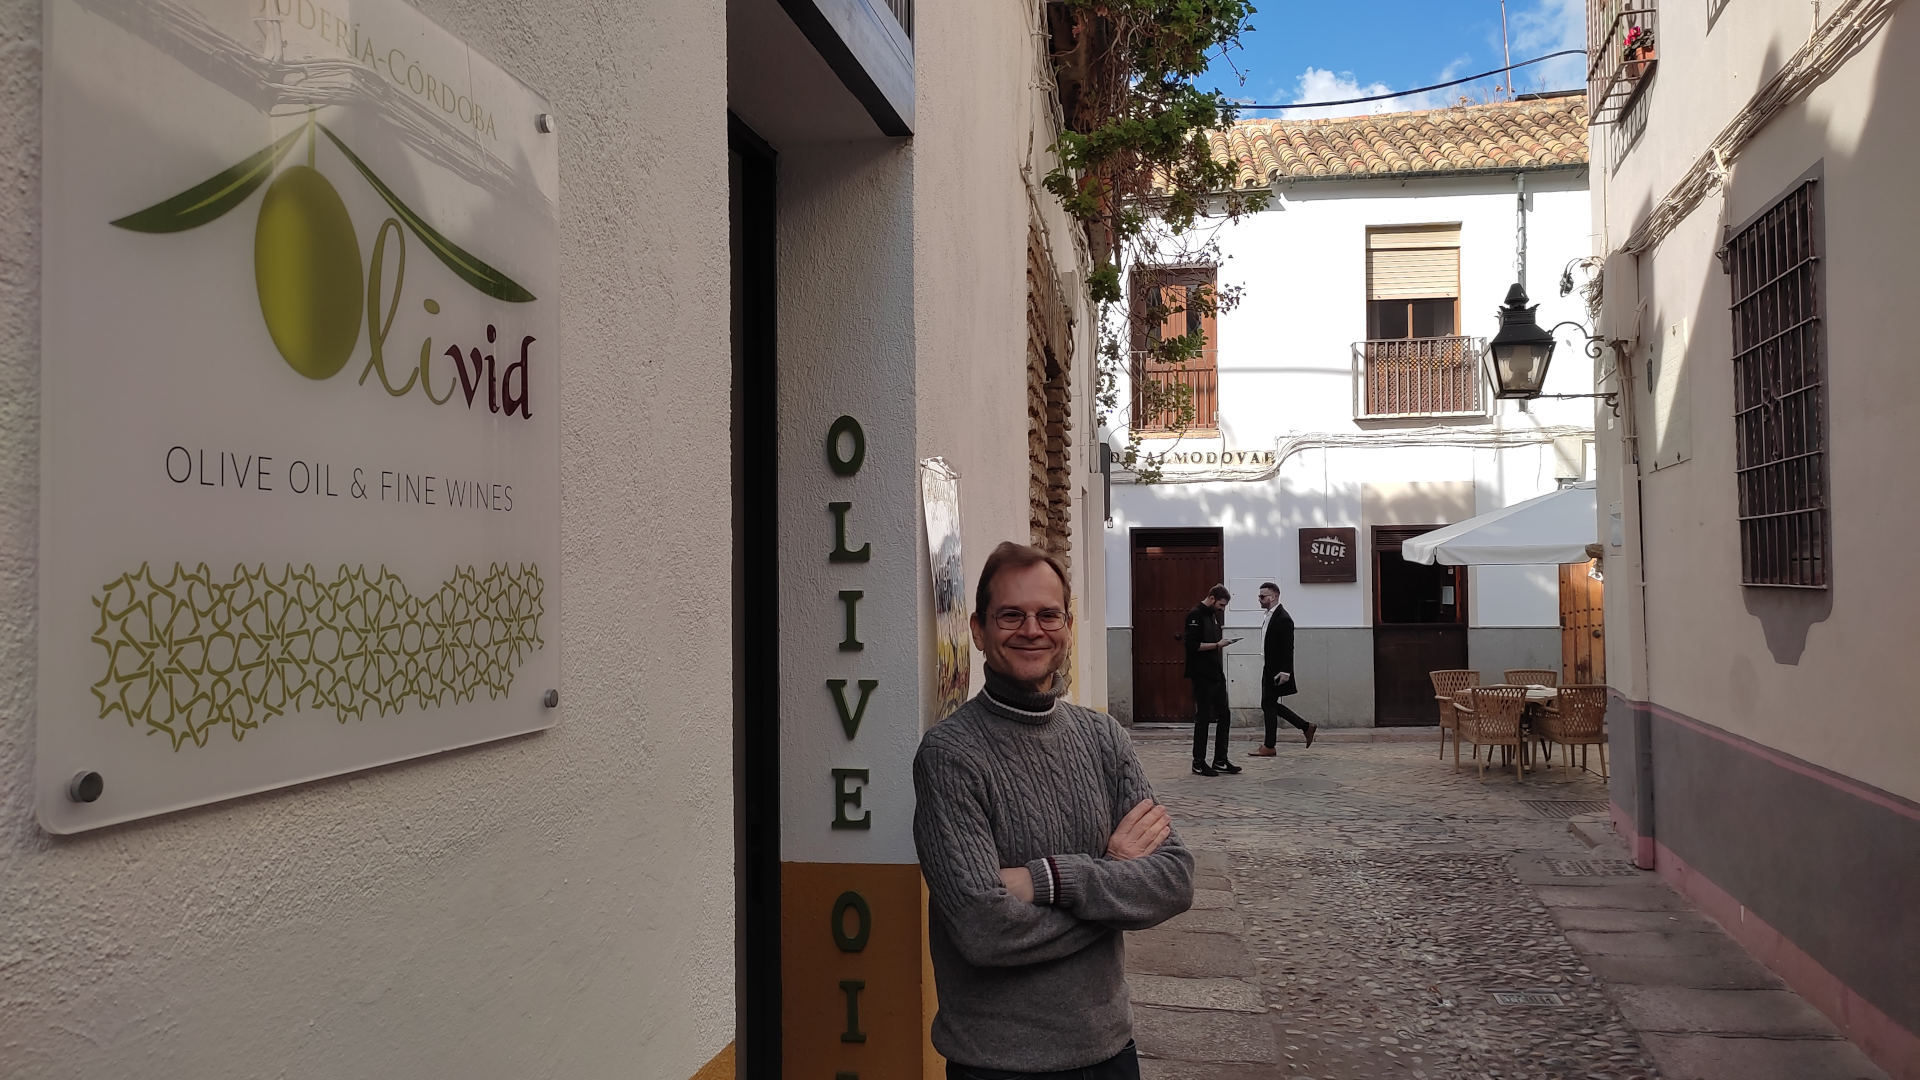 Olivid Judería abre sus puertas con su oferta de aceites, vinos, vinagres y licores